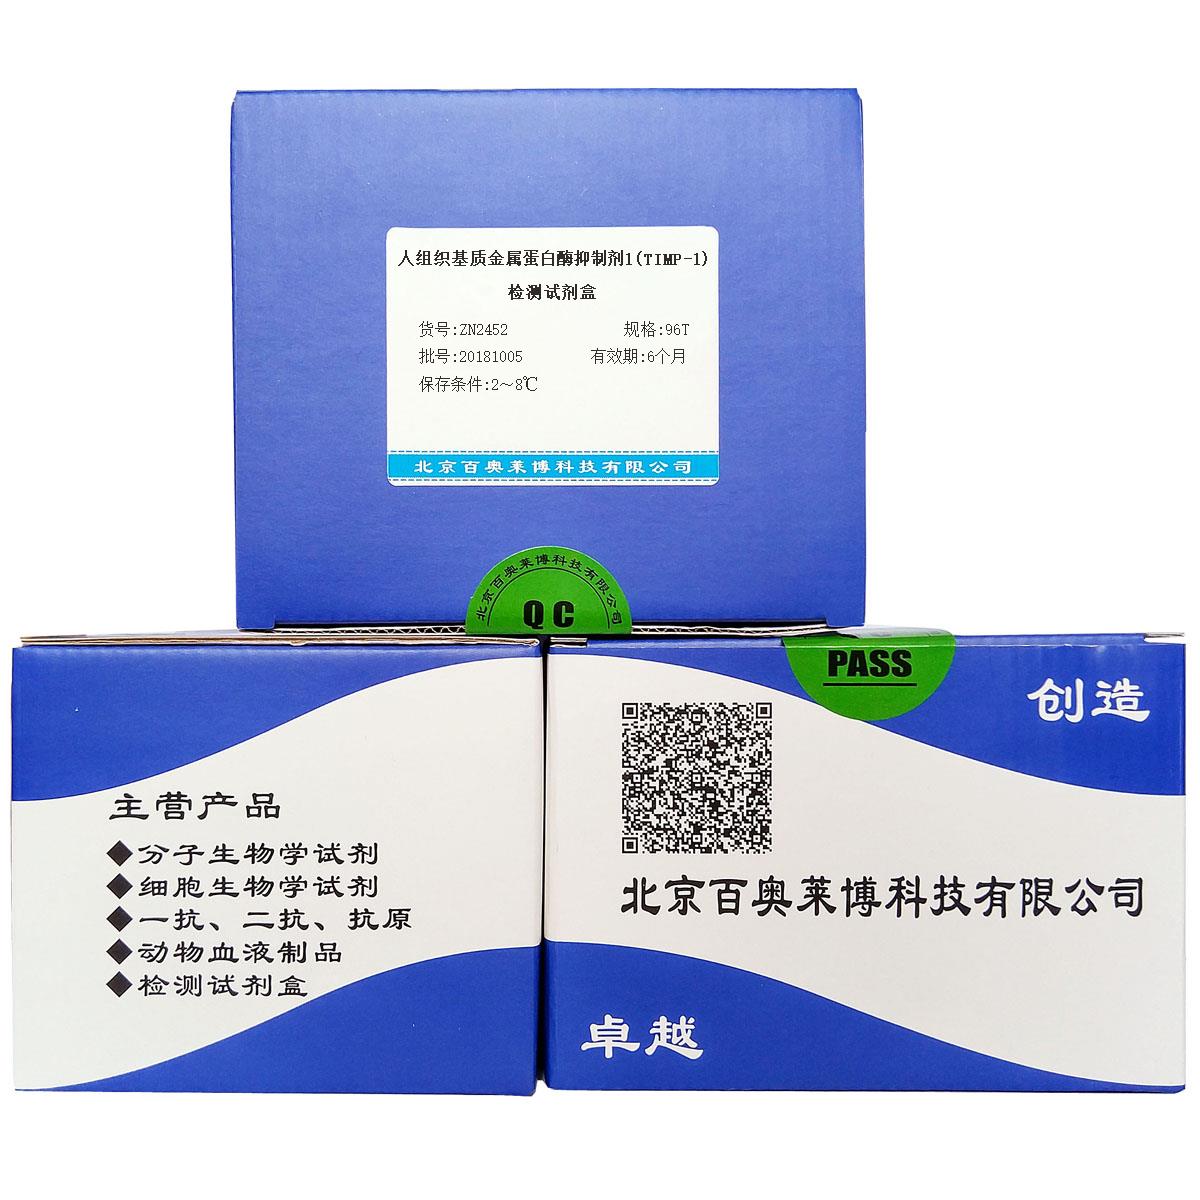 人组织基质金属蛋白酶抑制剂1(TIMP-1)检测试剂盒